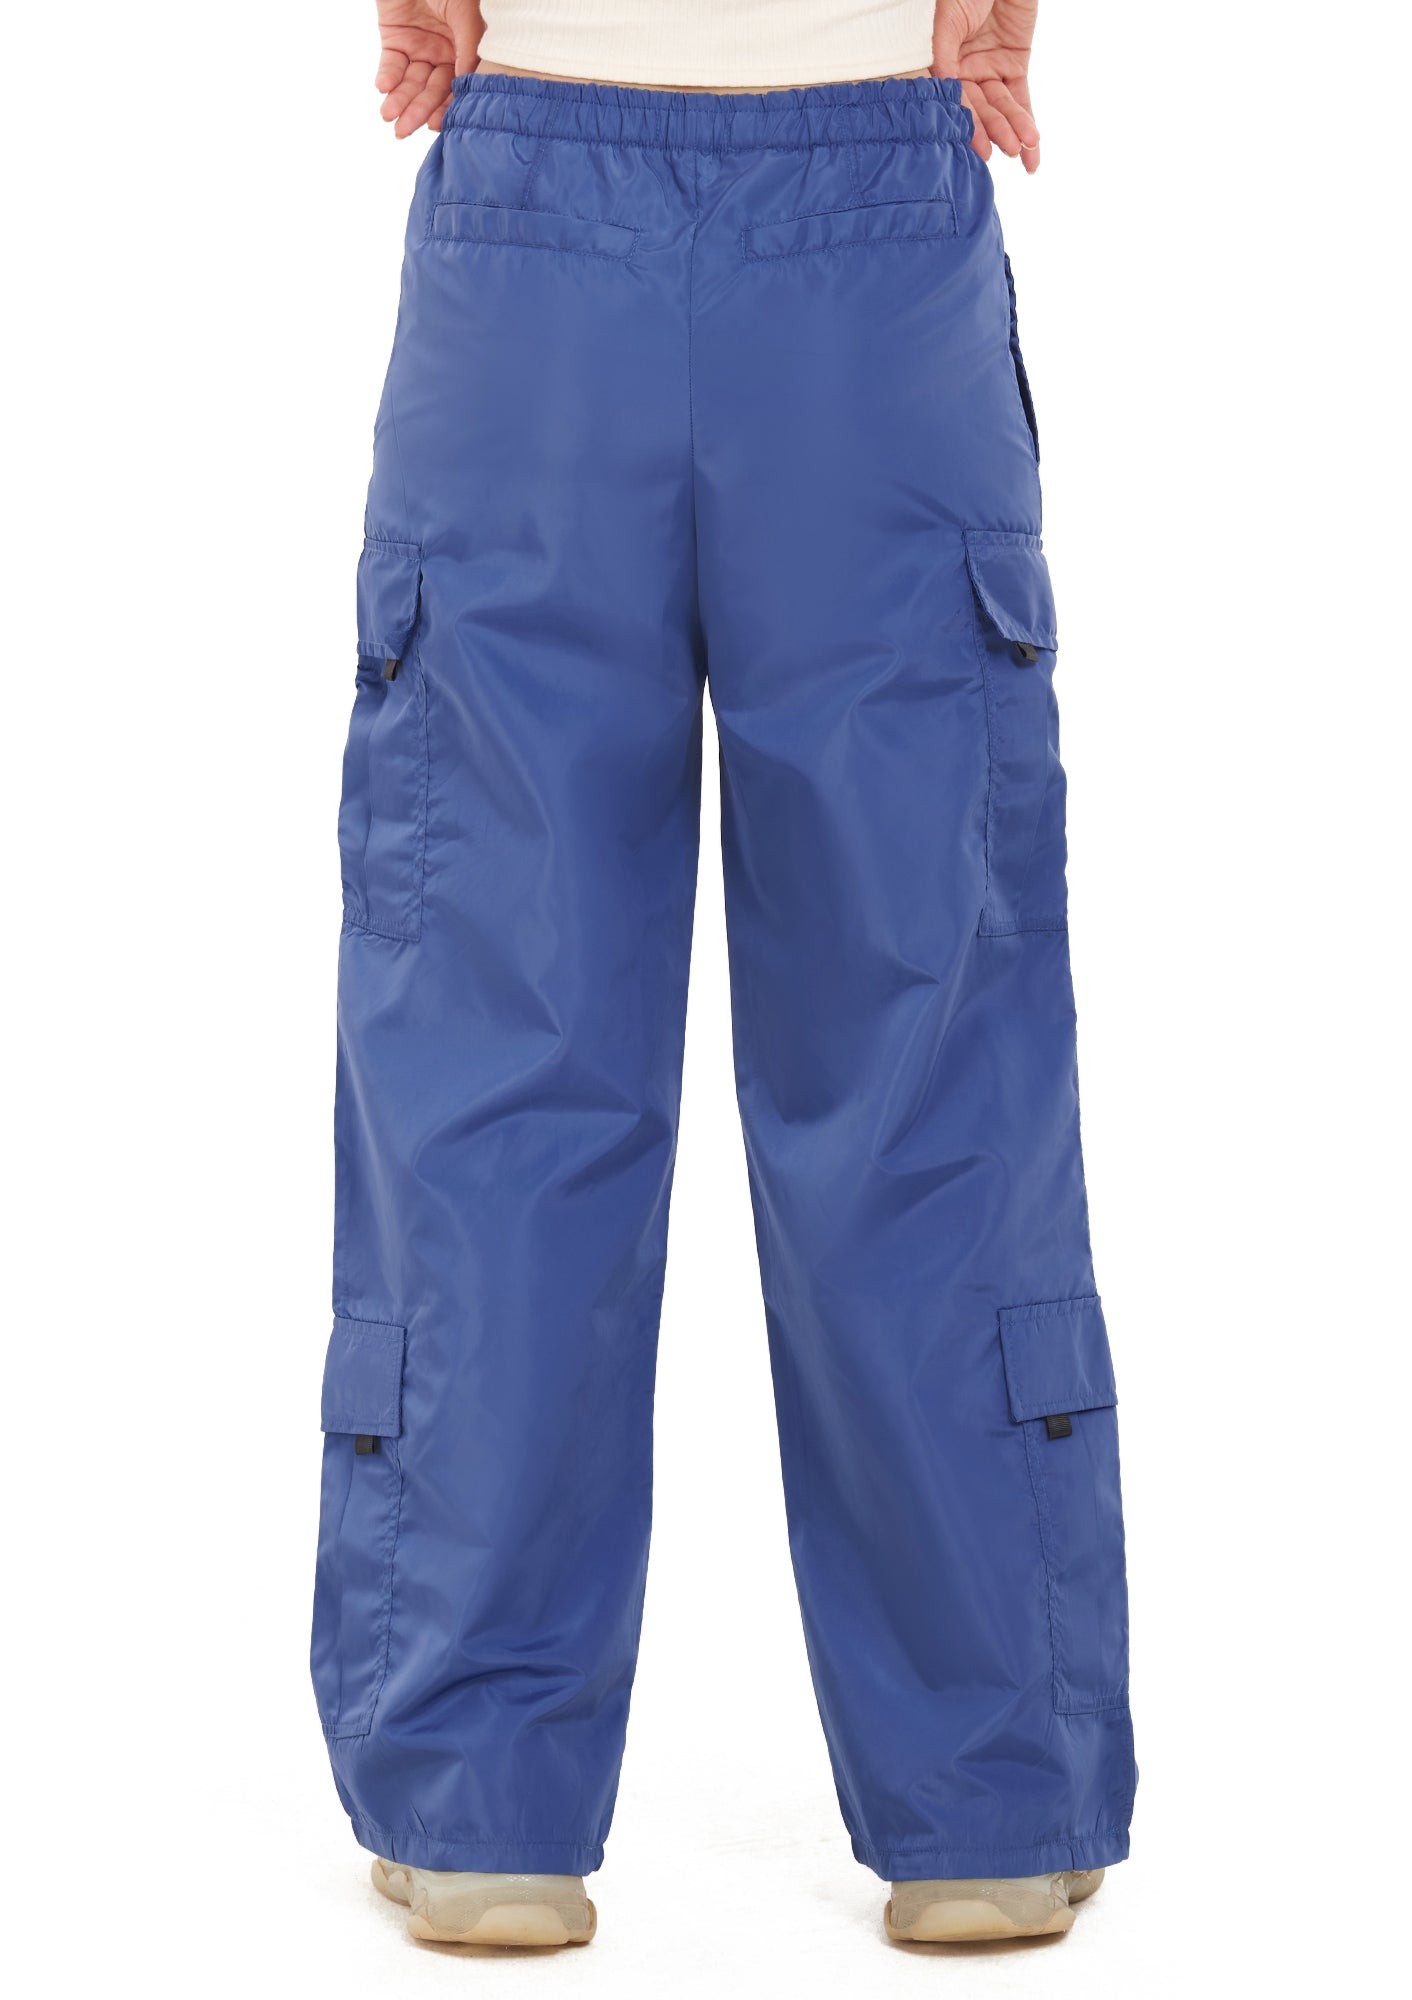 Blue pocket parachute pant